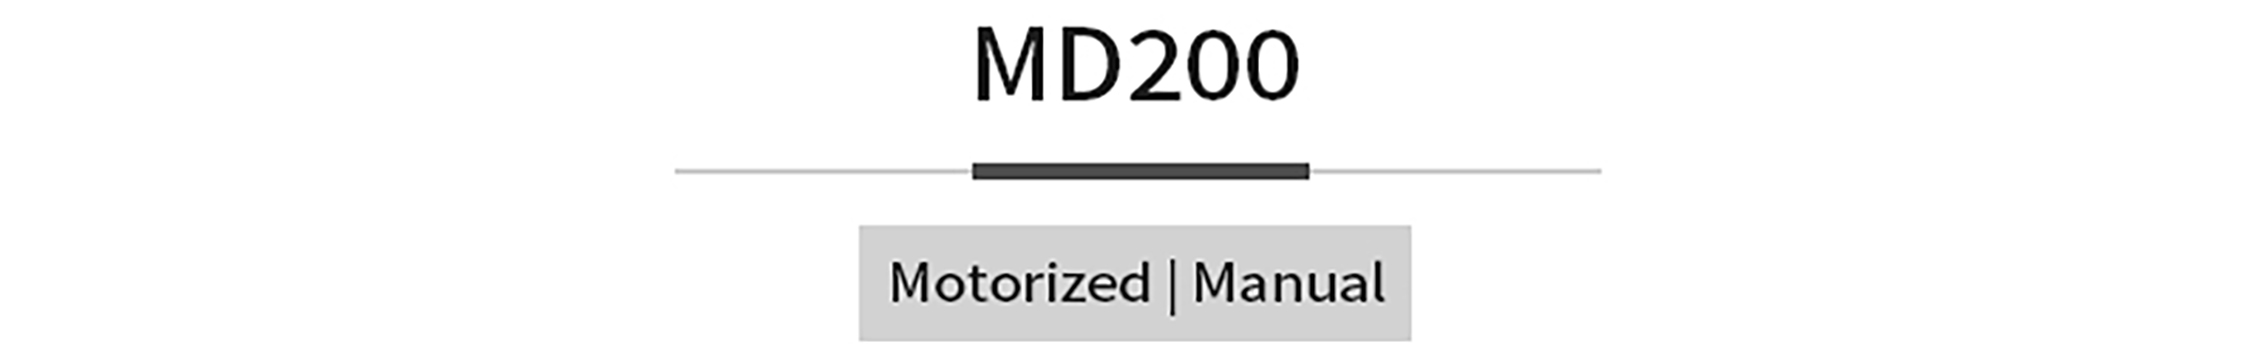 MEDO-MD200TM详情页_02